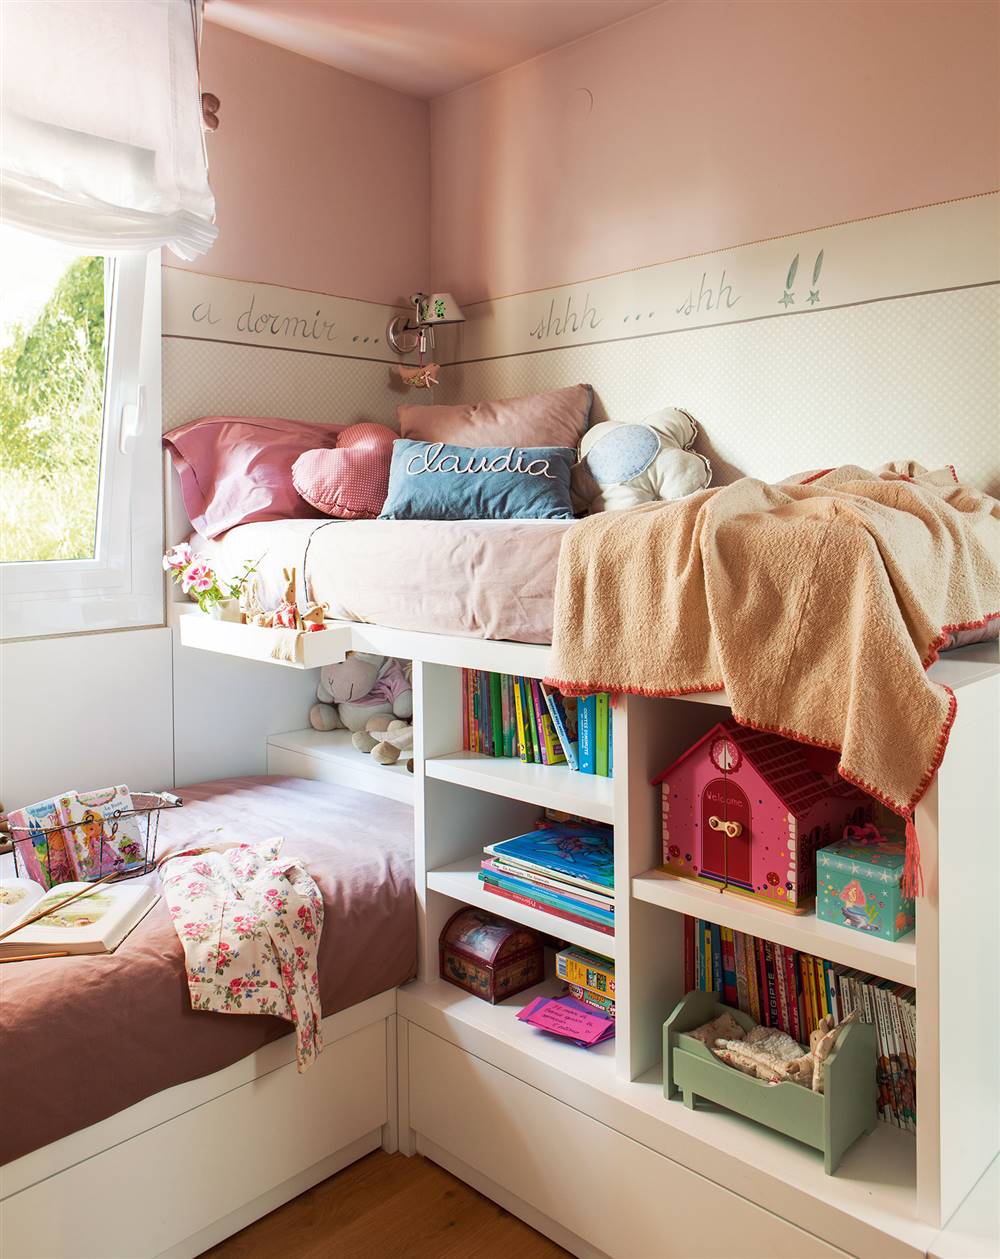 27 dormitorio-infantil-con-literas-en-perpendicular-y-estantes-a-modo-de-libreria-en-la-estructura-de-las-camas 0b8910e8